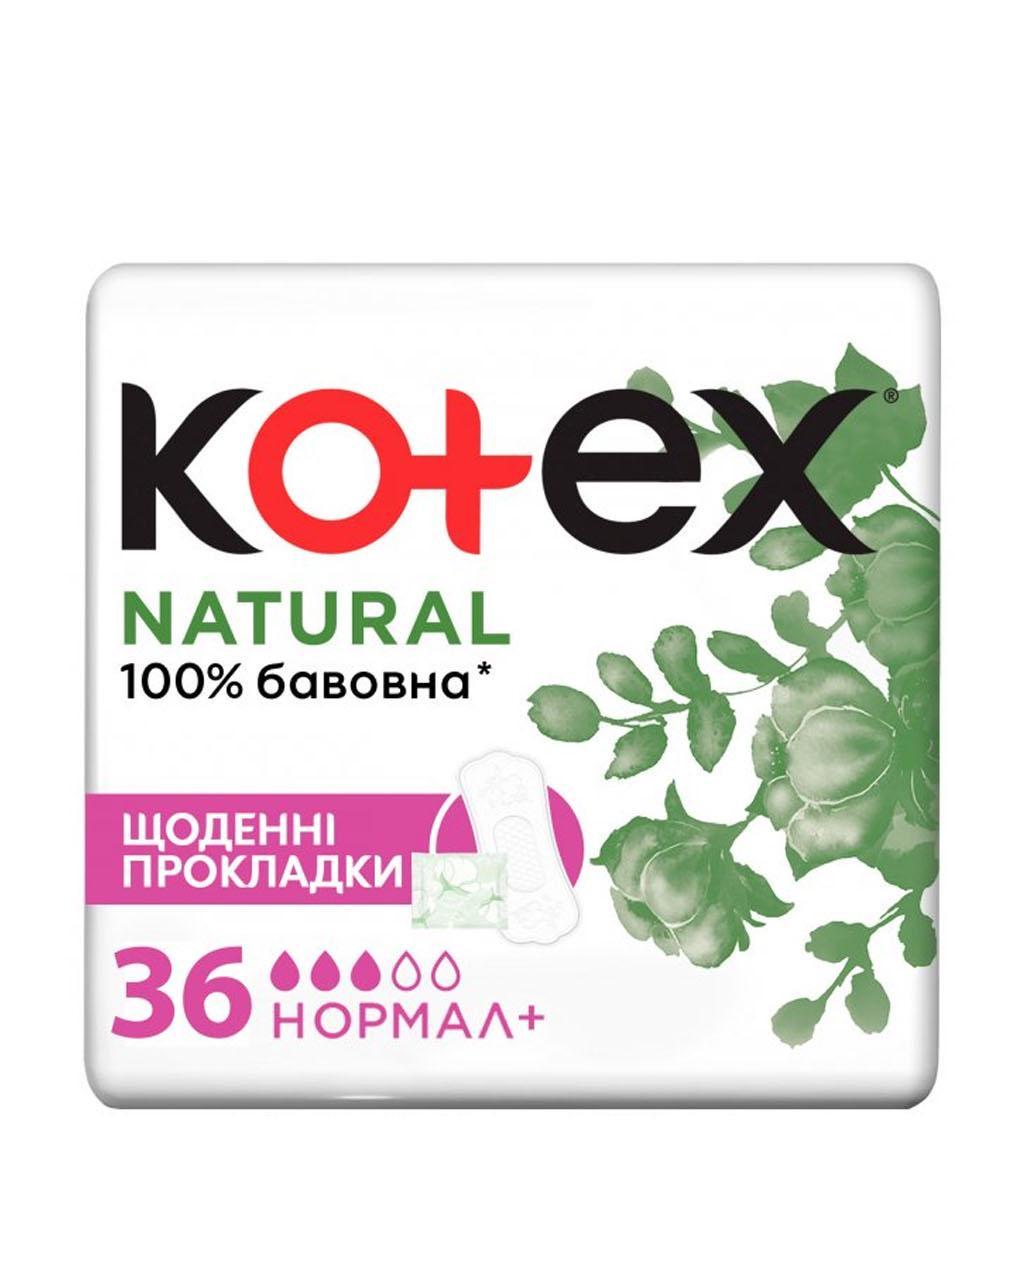 Прокладки щоденні Kotex Natural Normal+ 36 шт.